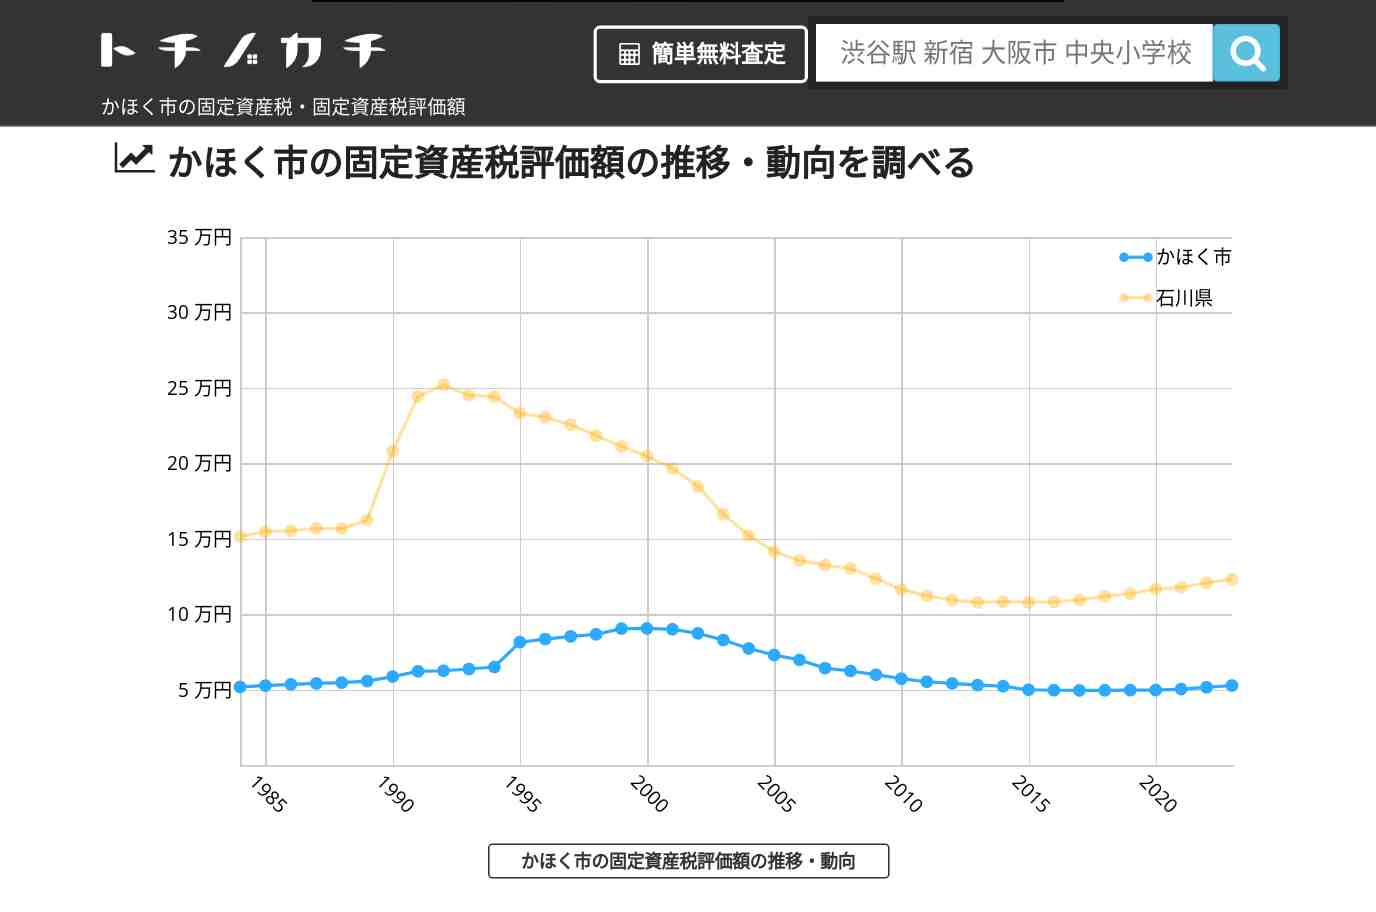 高松小学校(石川県 かほく市)周辺の固定資産税・固定資産税評価額 | トチノカチ